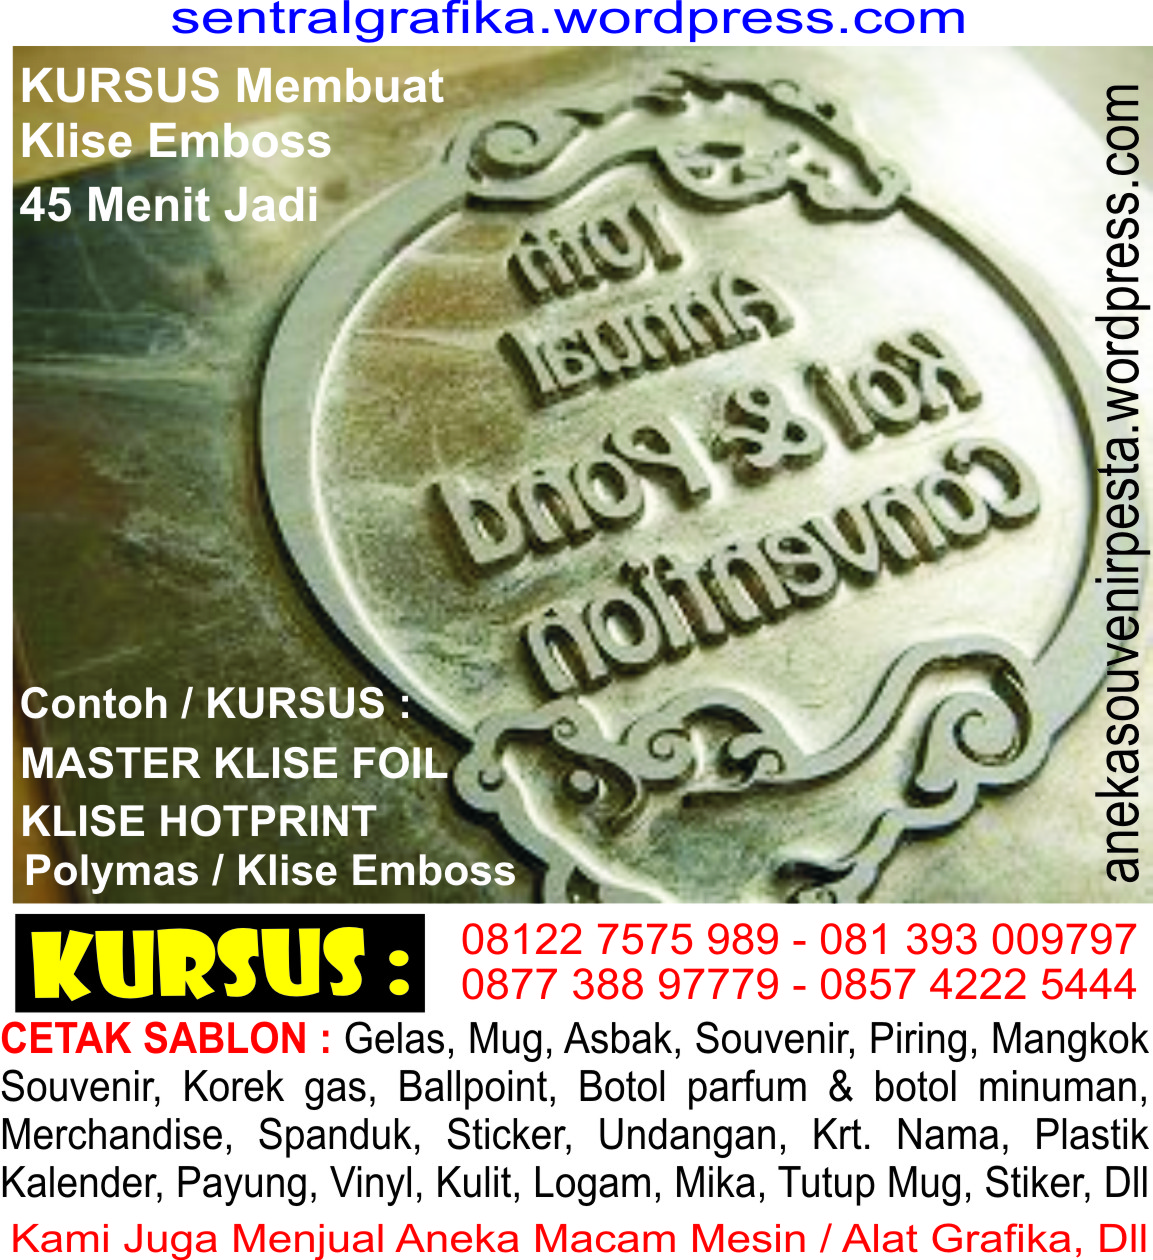 KURSUS ( kompaskoran.wordpress.com ) : Cetak Offset 